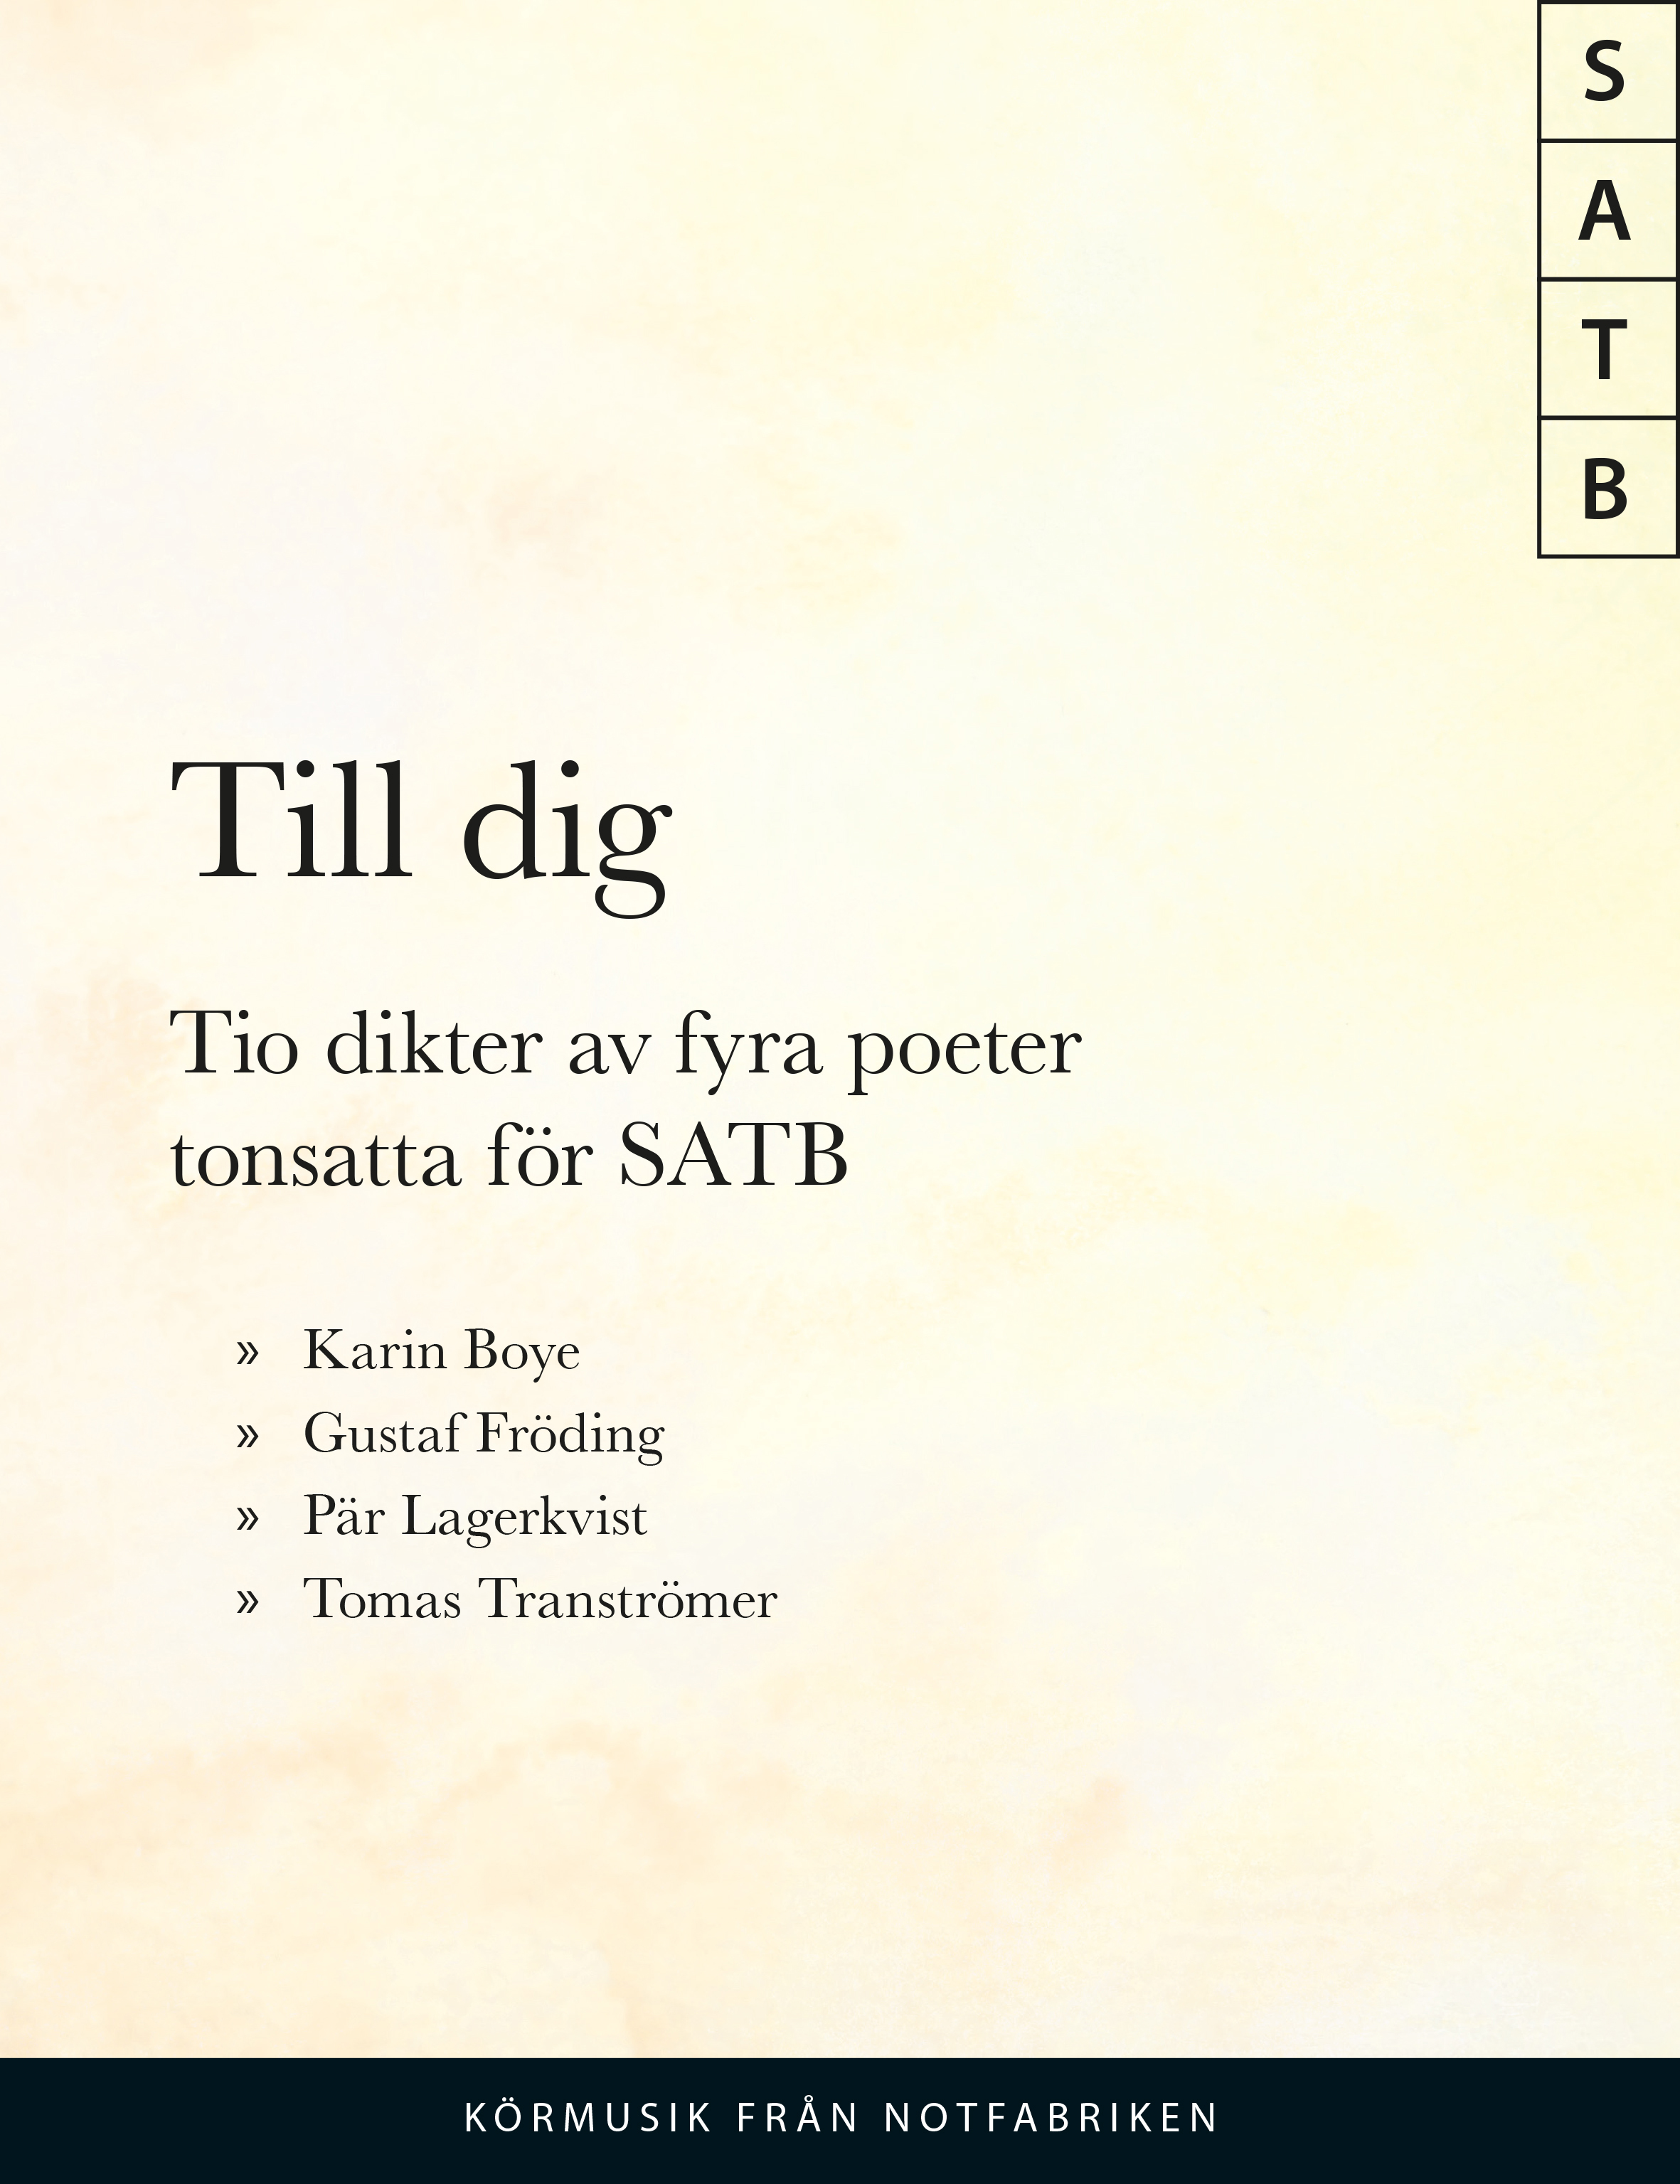 Till dig: 10 dikter av 4 poeter (SATB)